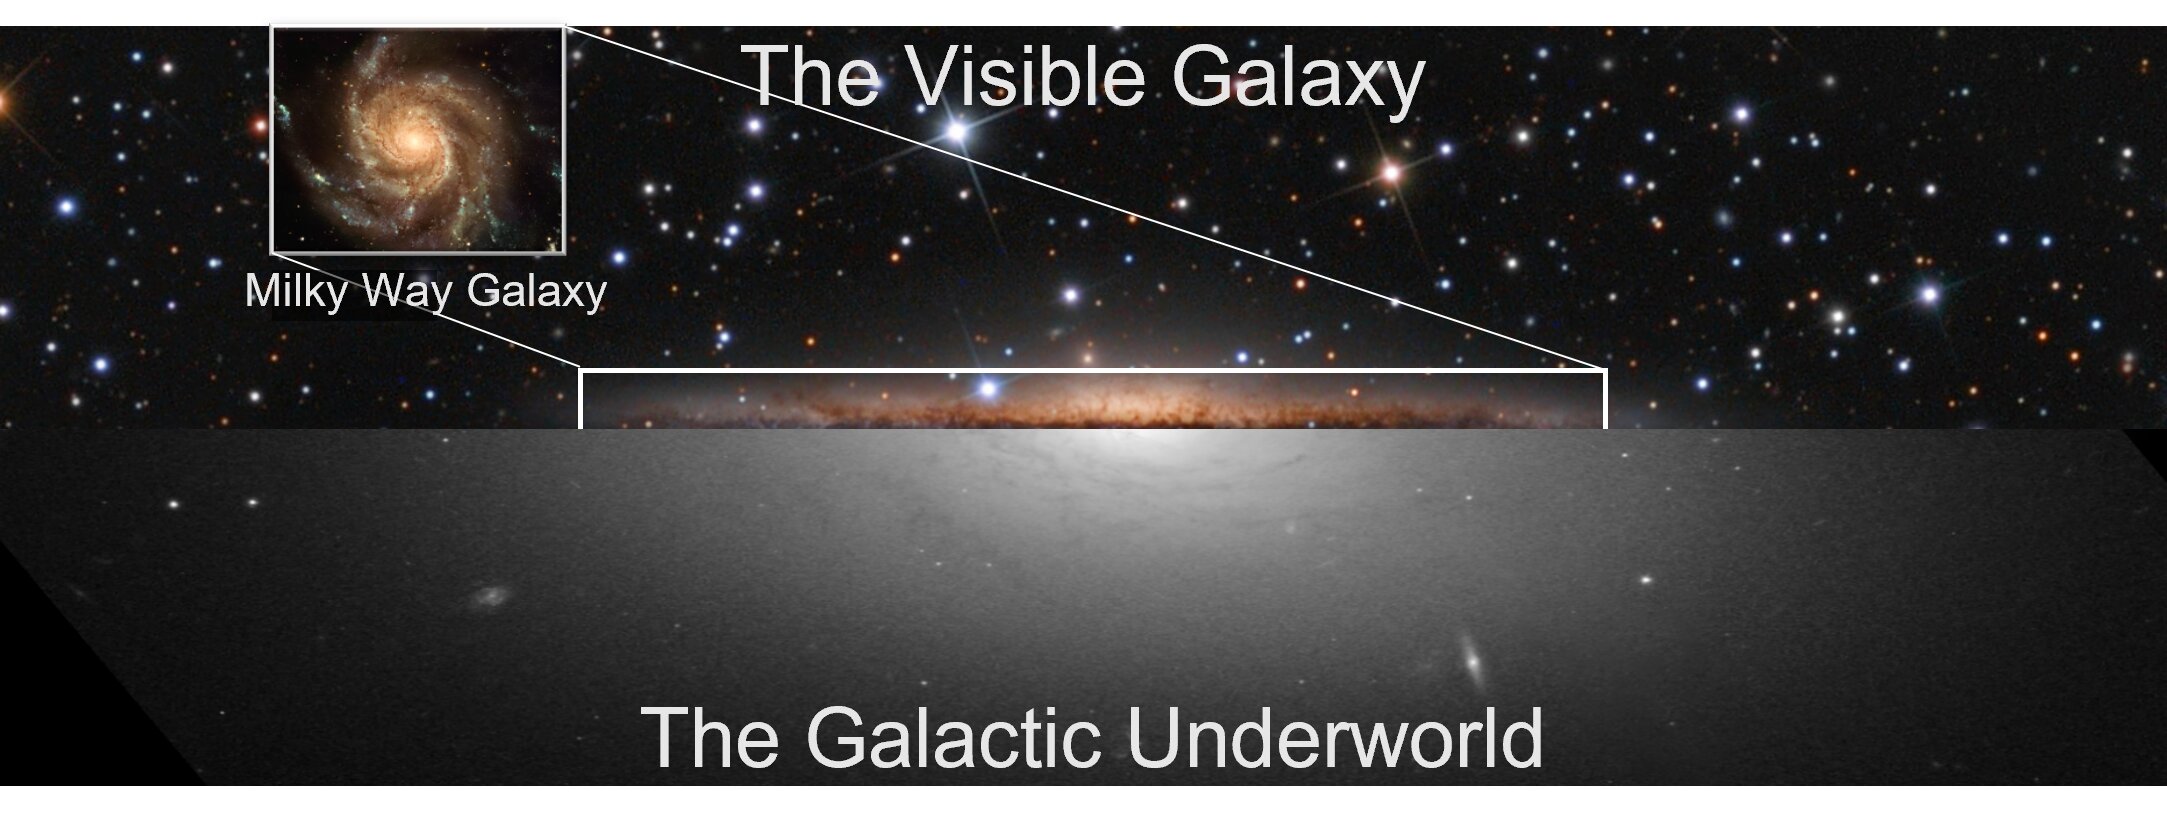 Ein Bild der sichtbaren Milchstraße (oben), überlagert mit der simulierten Position der 